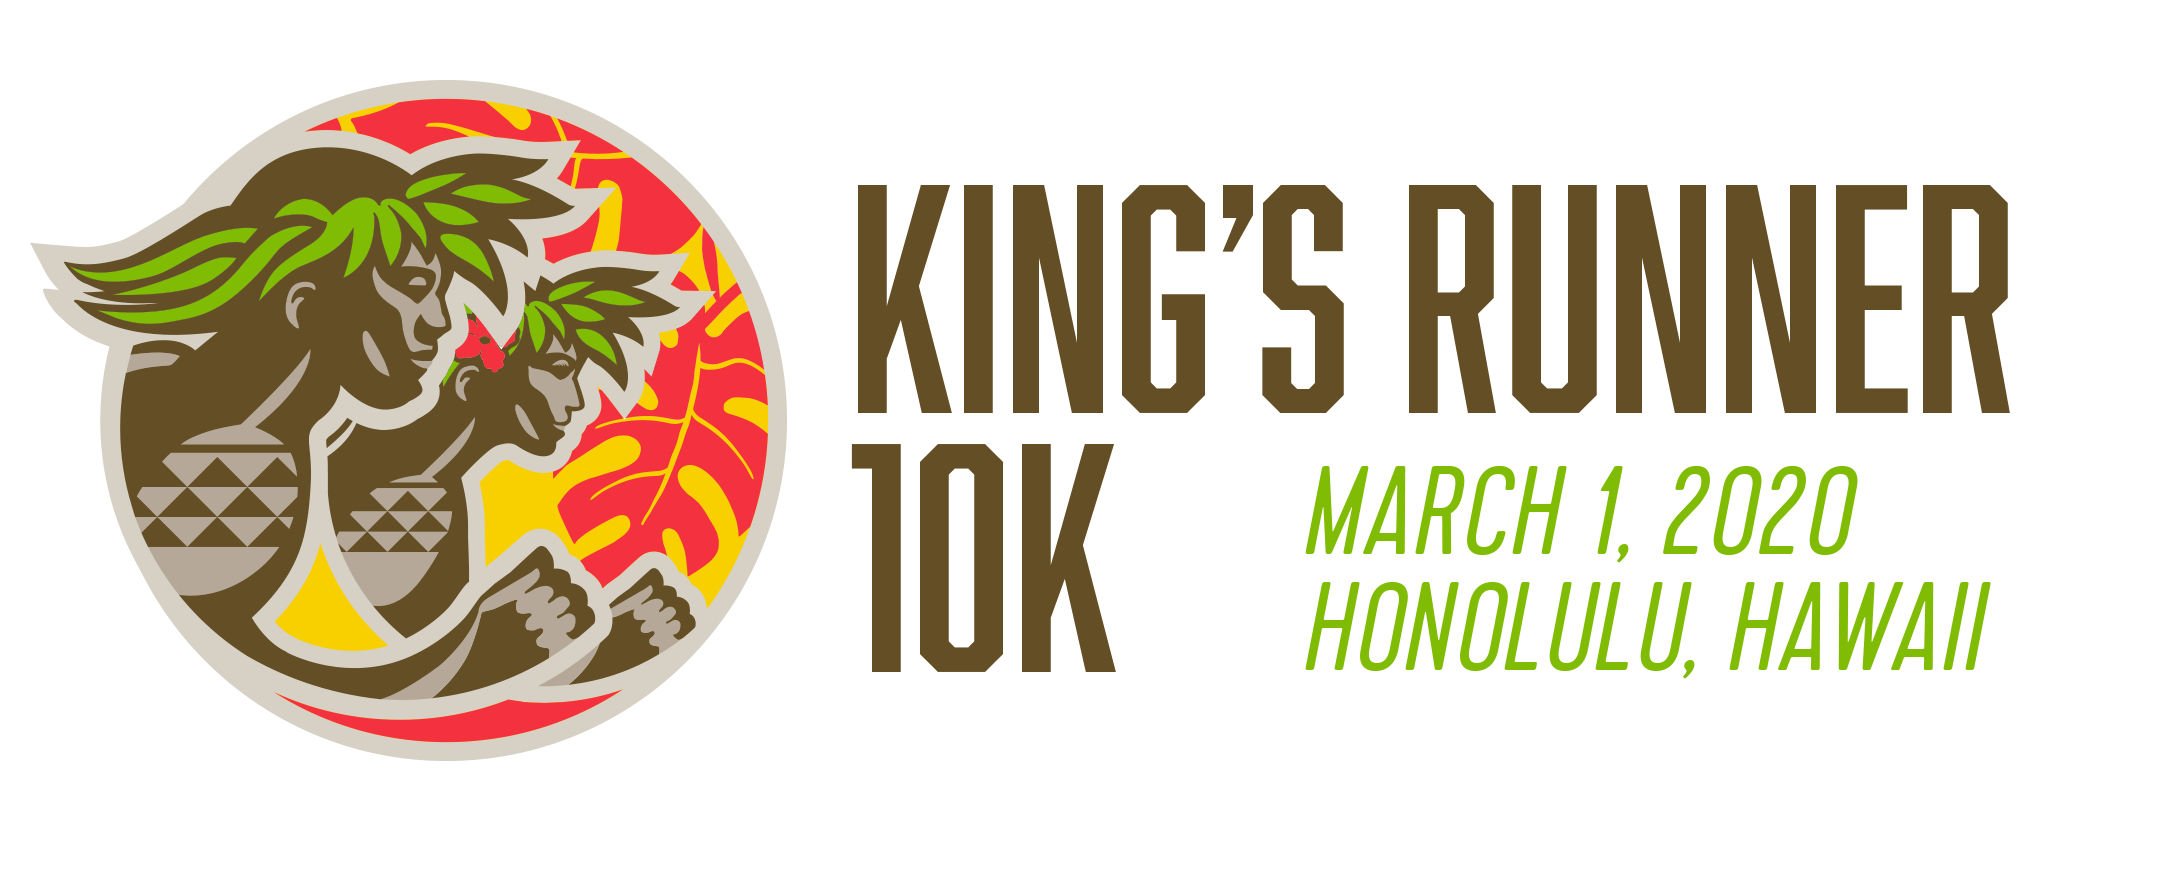 March Logo - King's Runner 10k : Honolulu Marathon